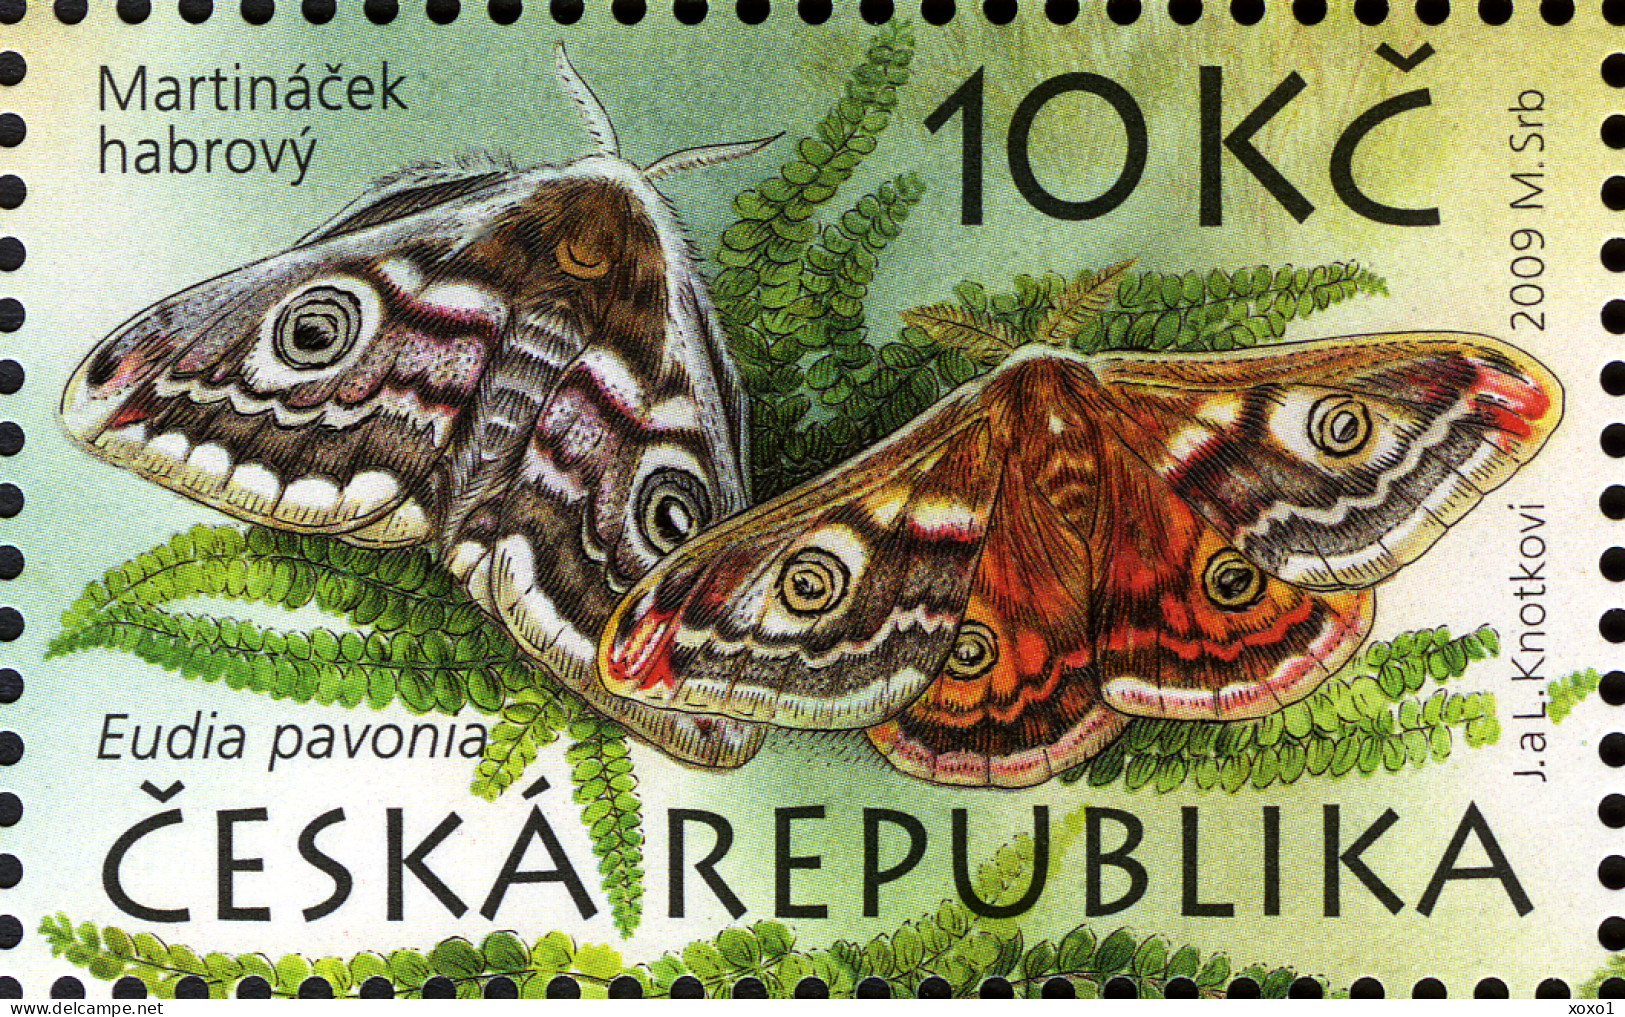 Czech Republic 2009 MiNr. (Block 38) Tschechische Republik UNESCO Birds Owls Mammals Butterflies S\sh   MNH** 5.00 € - UNESCO